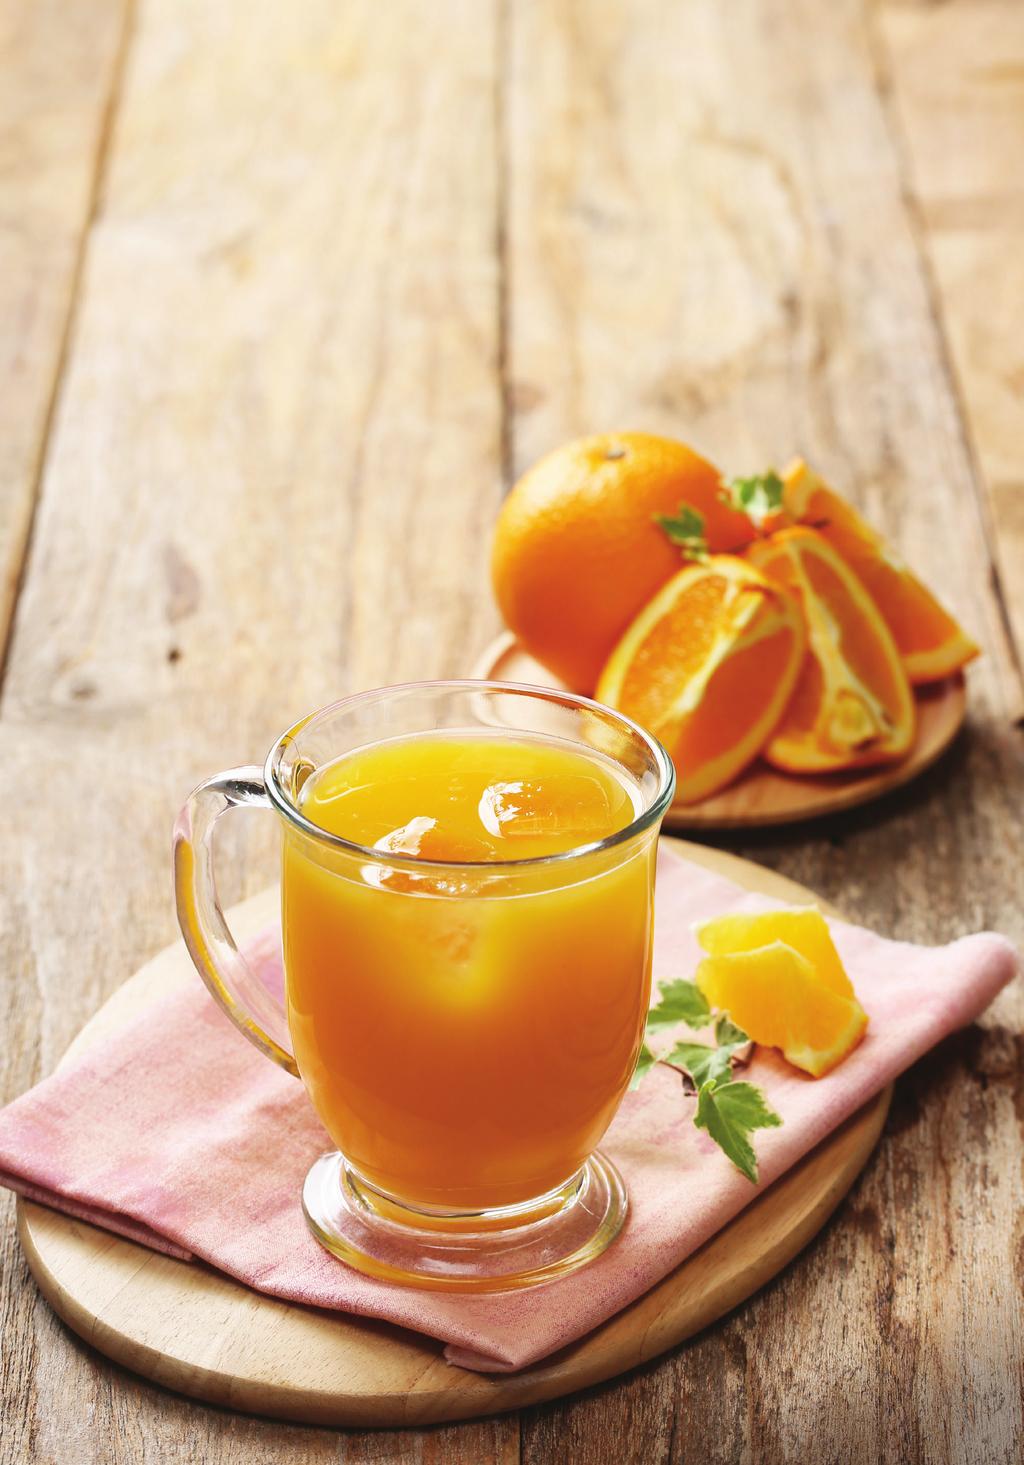 신선한 과일 주스 04 오렌지 주스 비타민 C가 풍부하여 피부 미용 및 감기 예방, 성인병 예방에 좋고